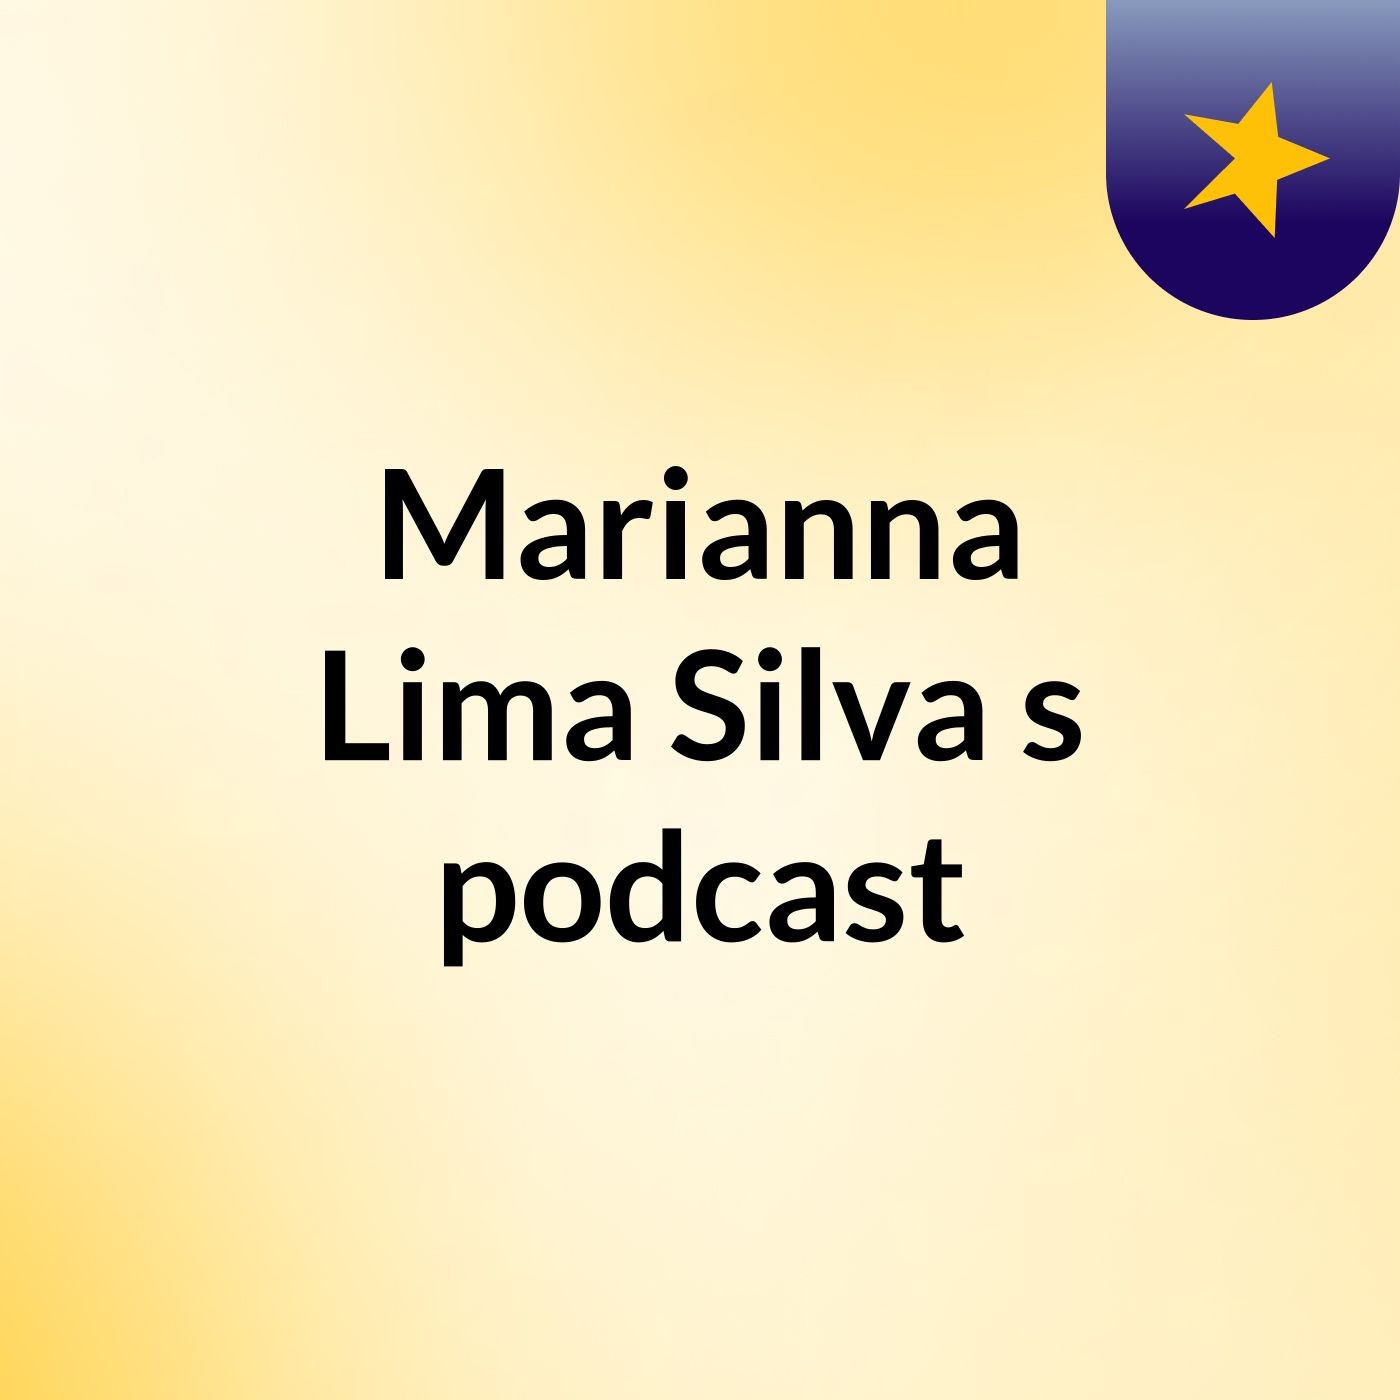 Marianna Lima Silva's podcast